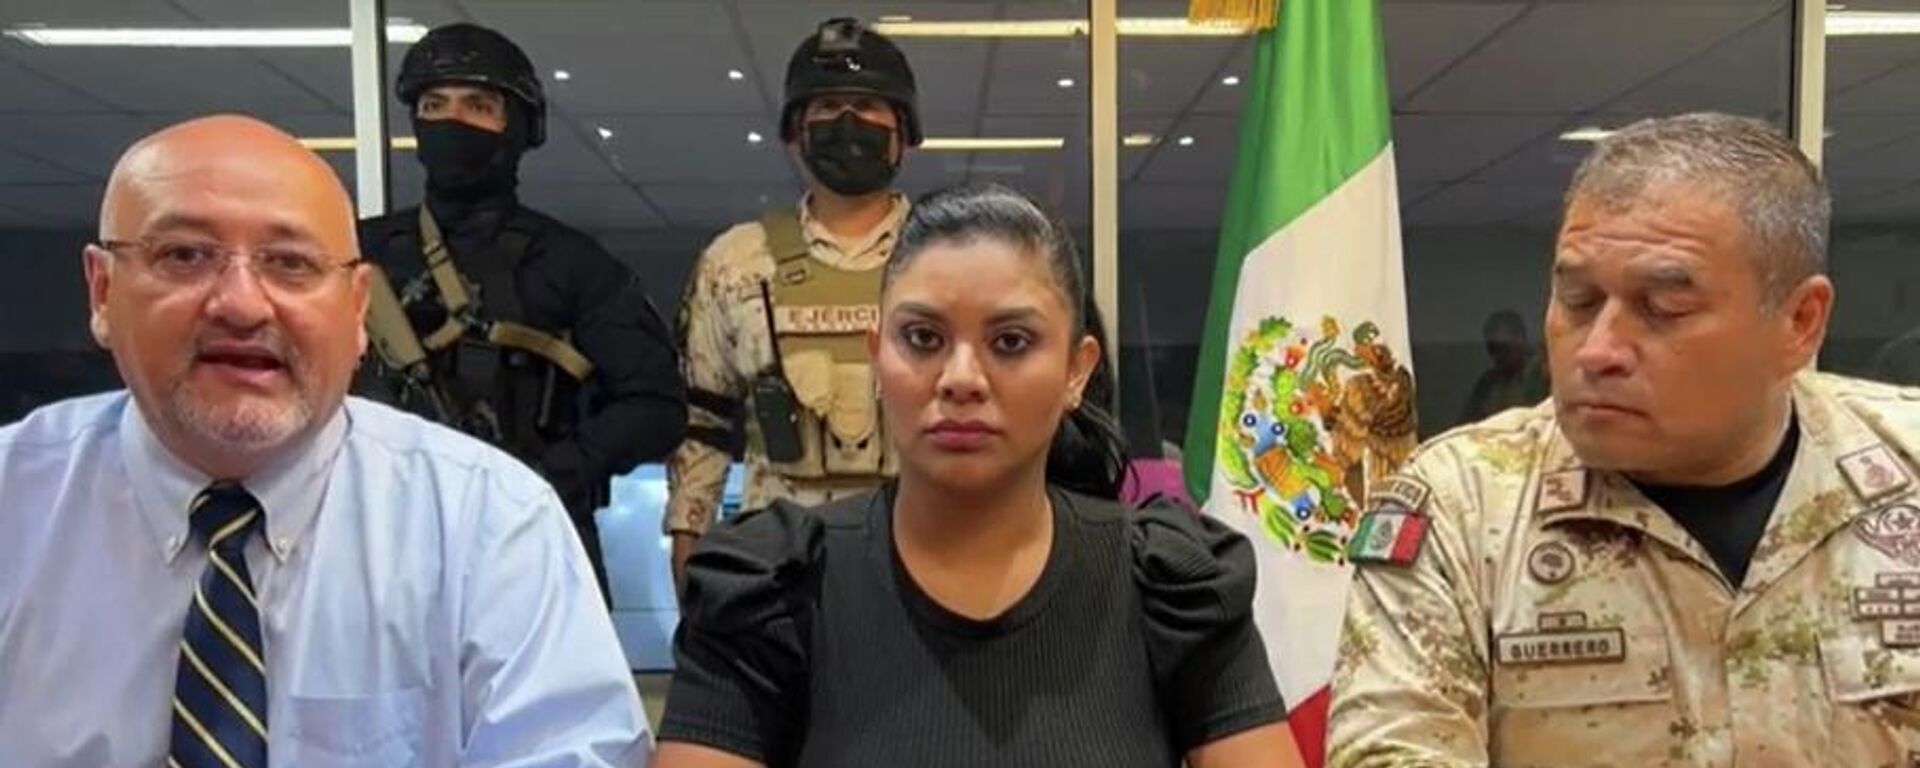 La alcaldesa de la ciudad mexicana de Tijuana, Montserrat Caballero, emite un mensaje al lado de funcionarios de seguridad el 13 de agosto de 2022 - Sputnik Mundo, 1920, 14.08.2022